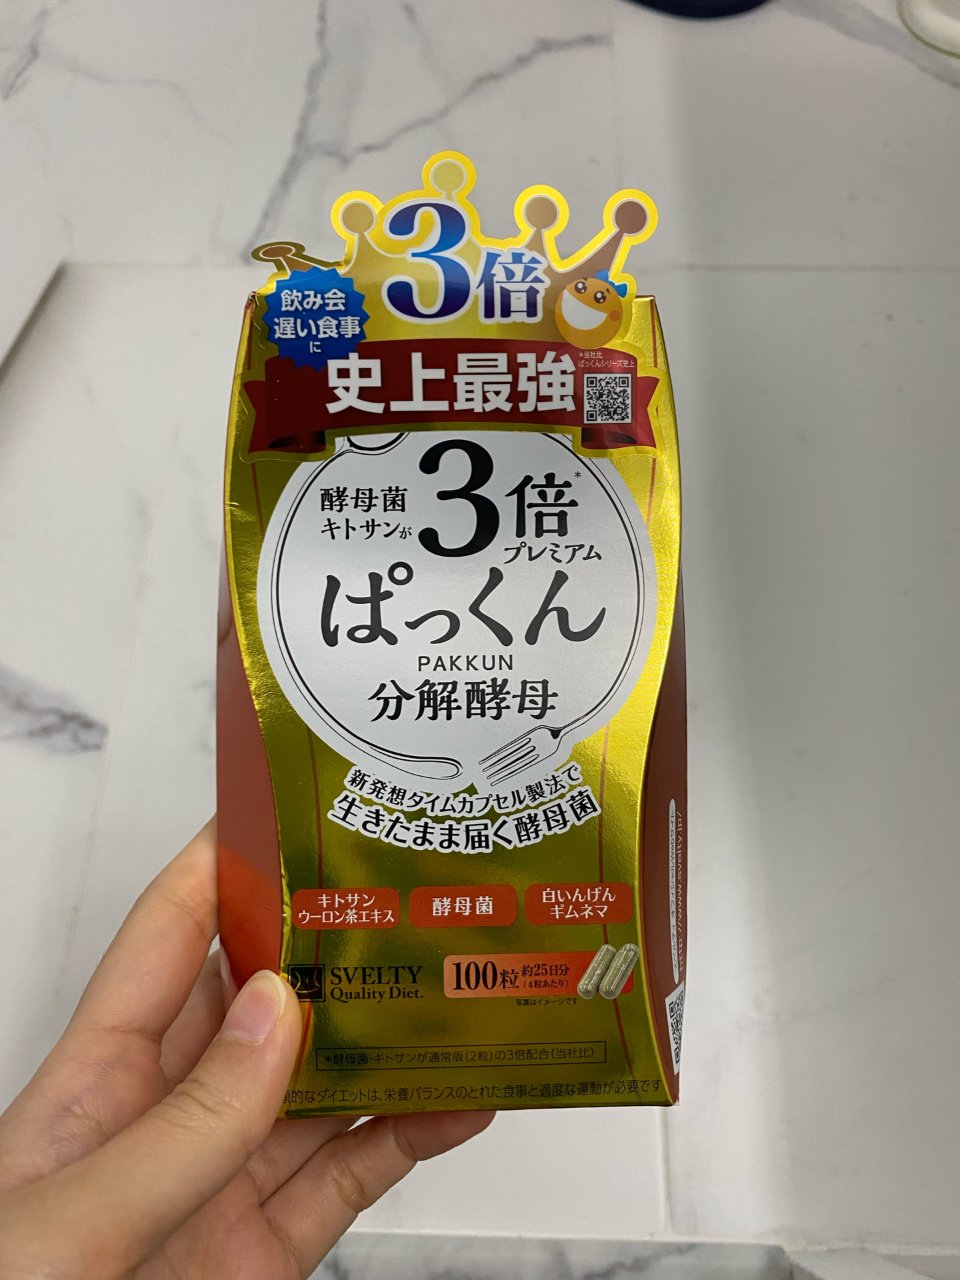 日本SVELTy丝蓓缇 3倍加强糖质分解...